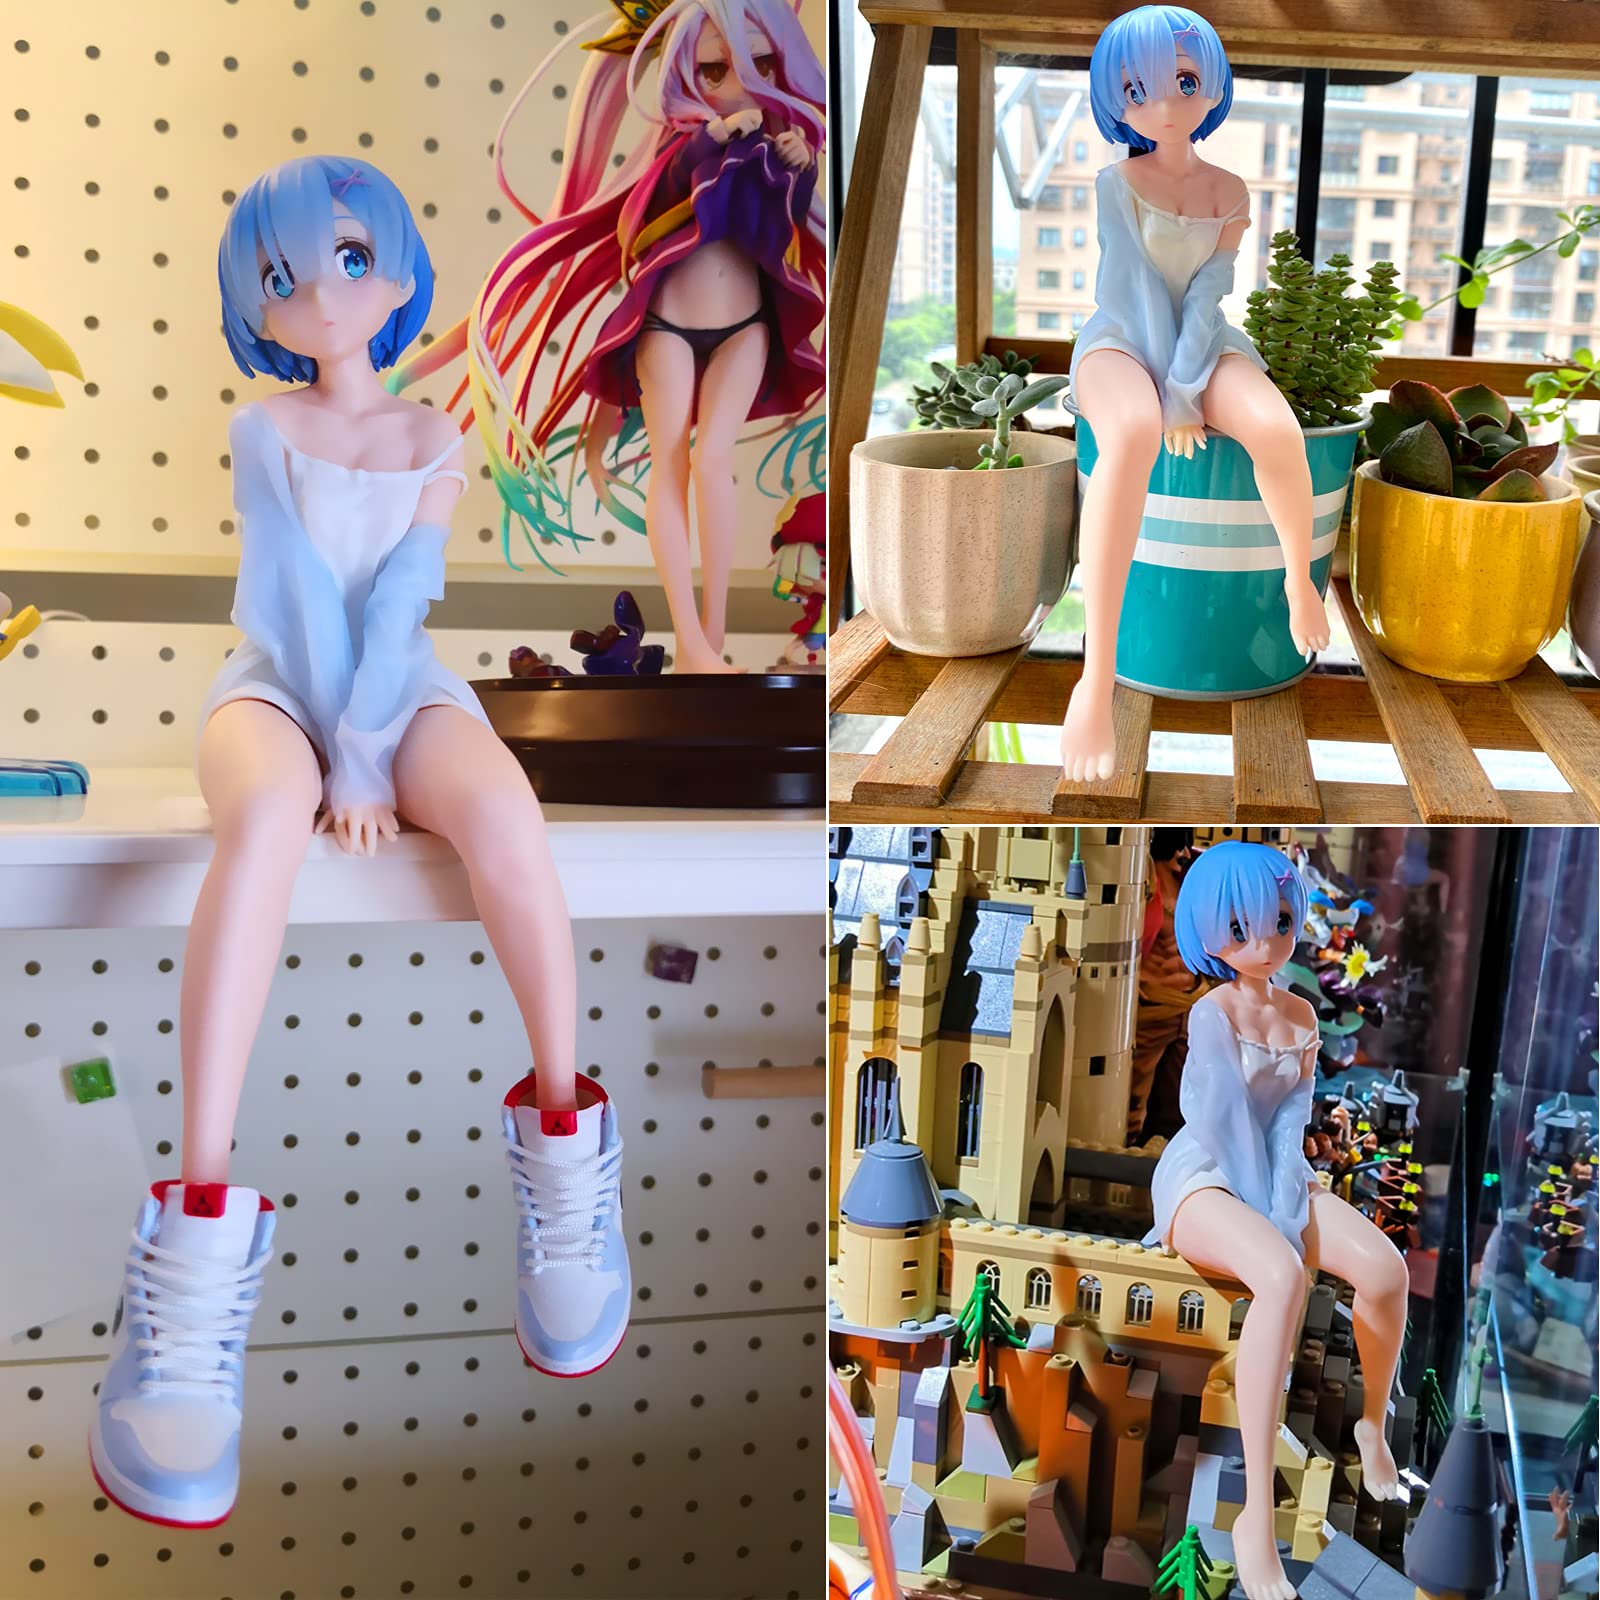 Mô hình nhân vật Nữ Pink Blue Zero nhựa bán trong Figure Rem Limited Edition 2121 1-7